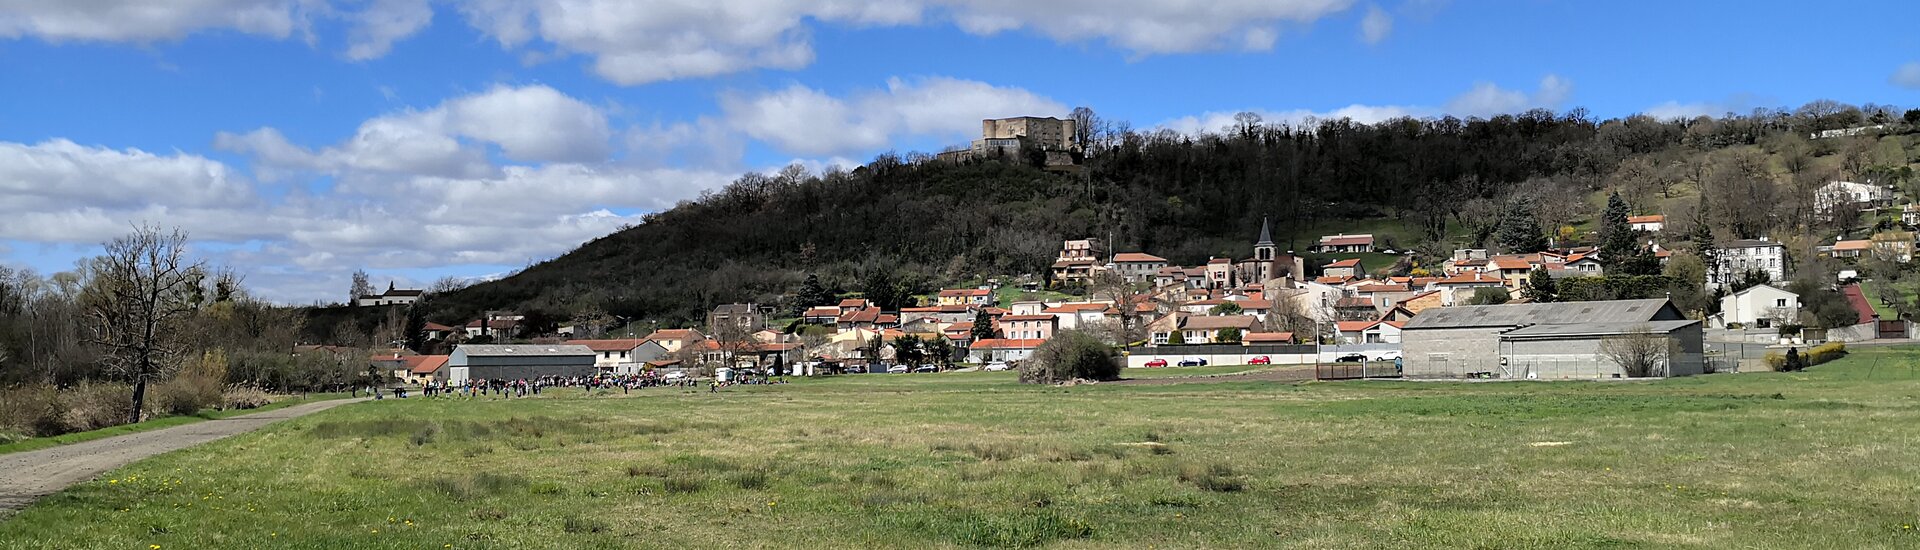 Commune Mairie Saint-Bonnet-lès-Allier Château Puy-de-Dôme Auvergne